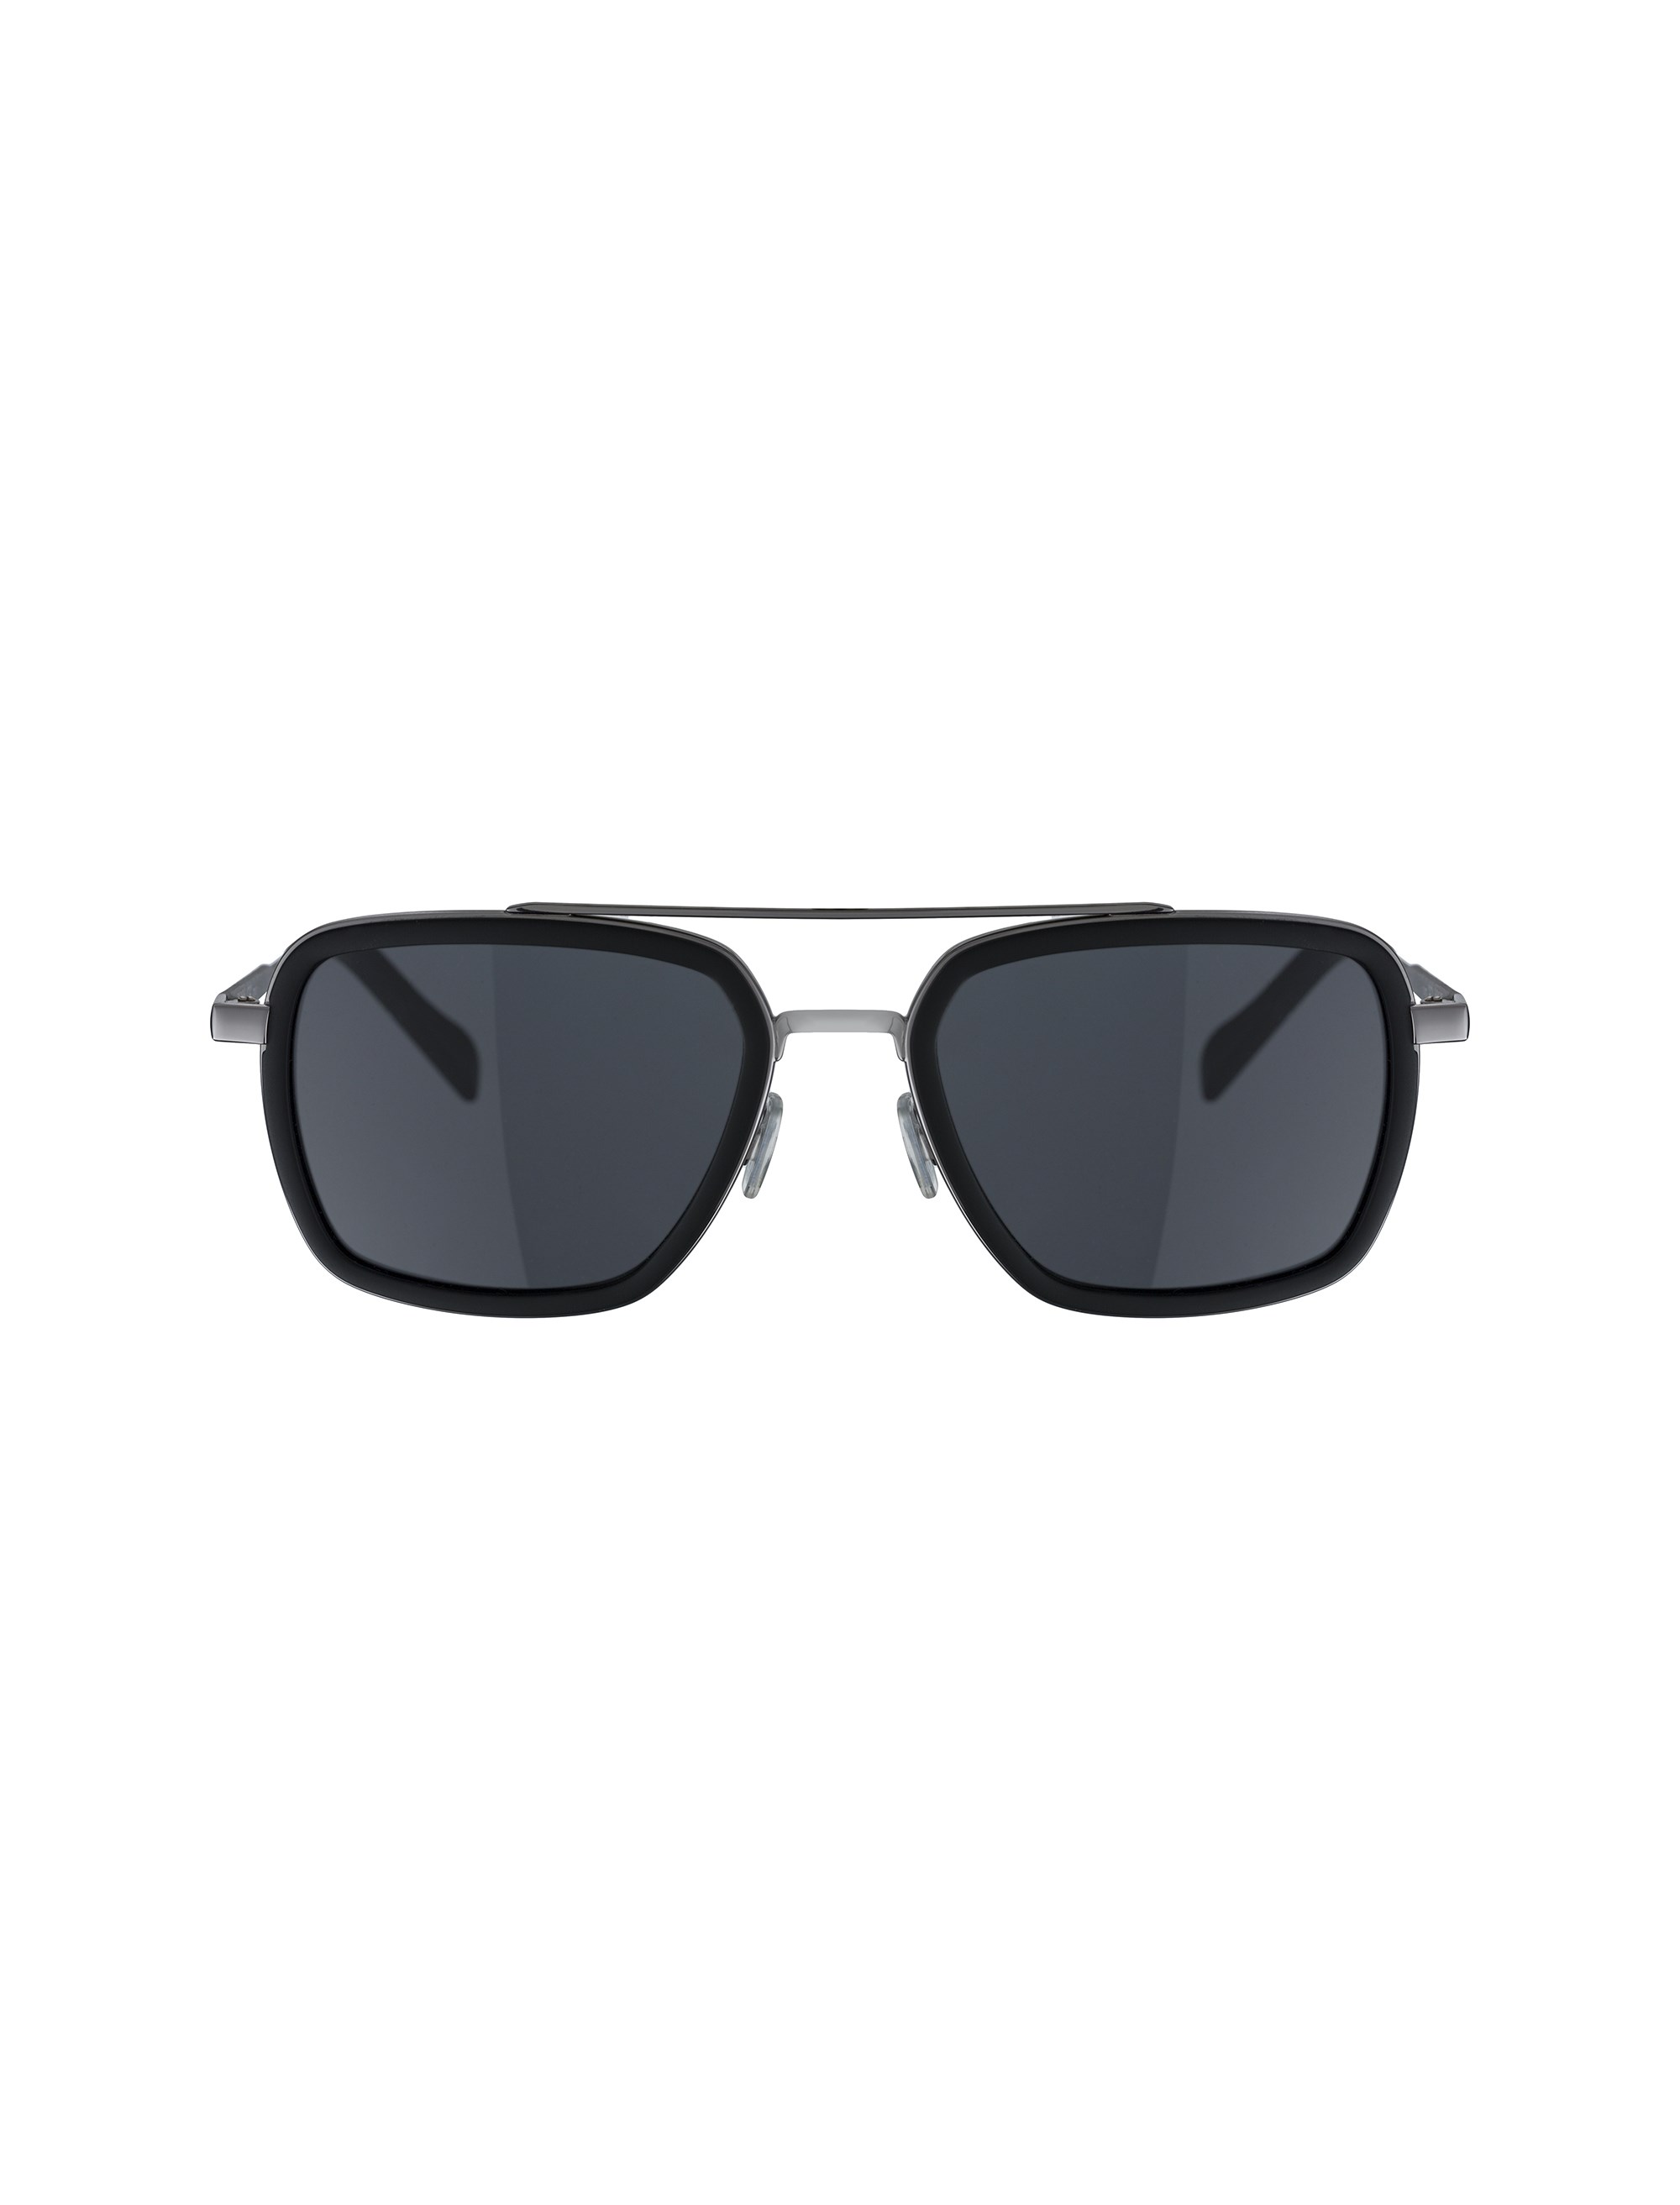 عینک آفتابی خلبانی مردانه - باس اورنج - مشکي  - 1